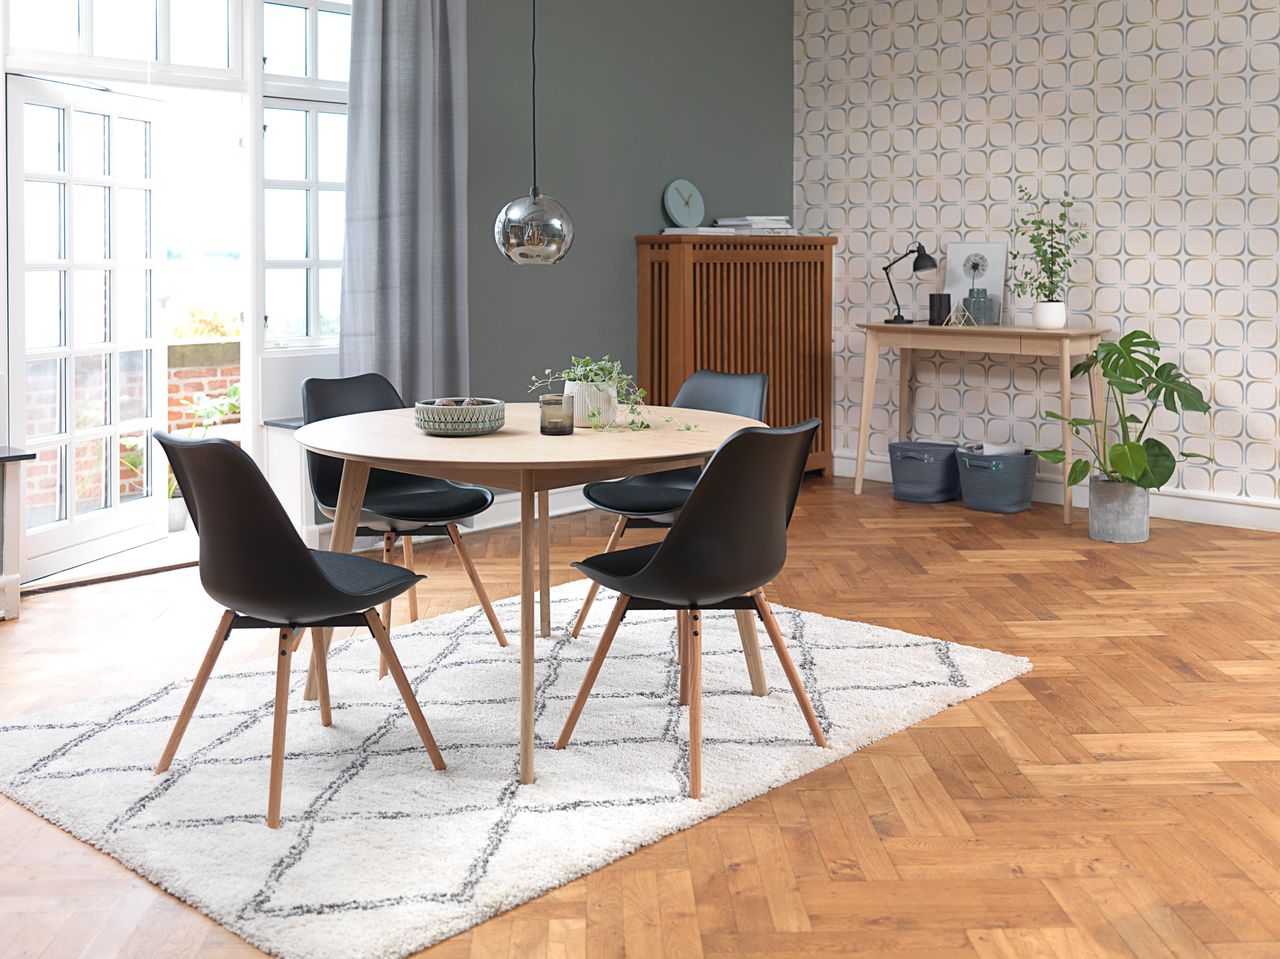 Mẫu phòng bếp Scandinavian chất liệu gỗ mang lại cảm giác ấm cúng, gần gũi cho không gian